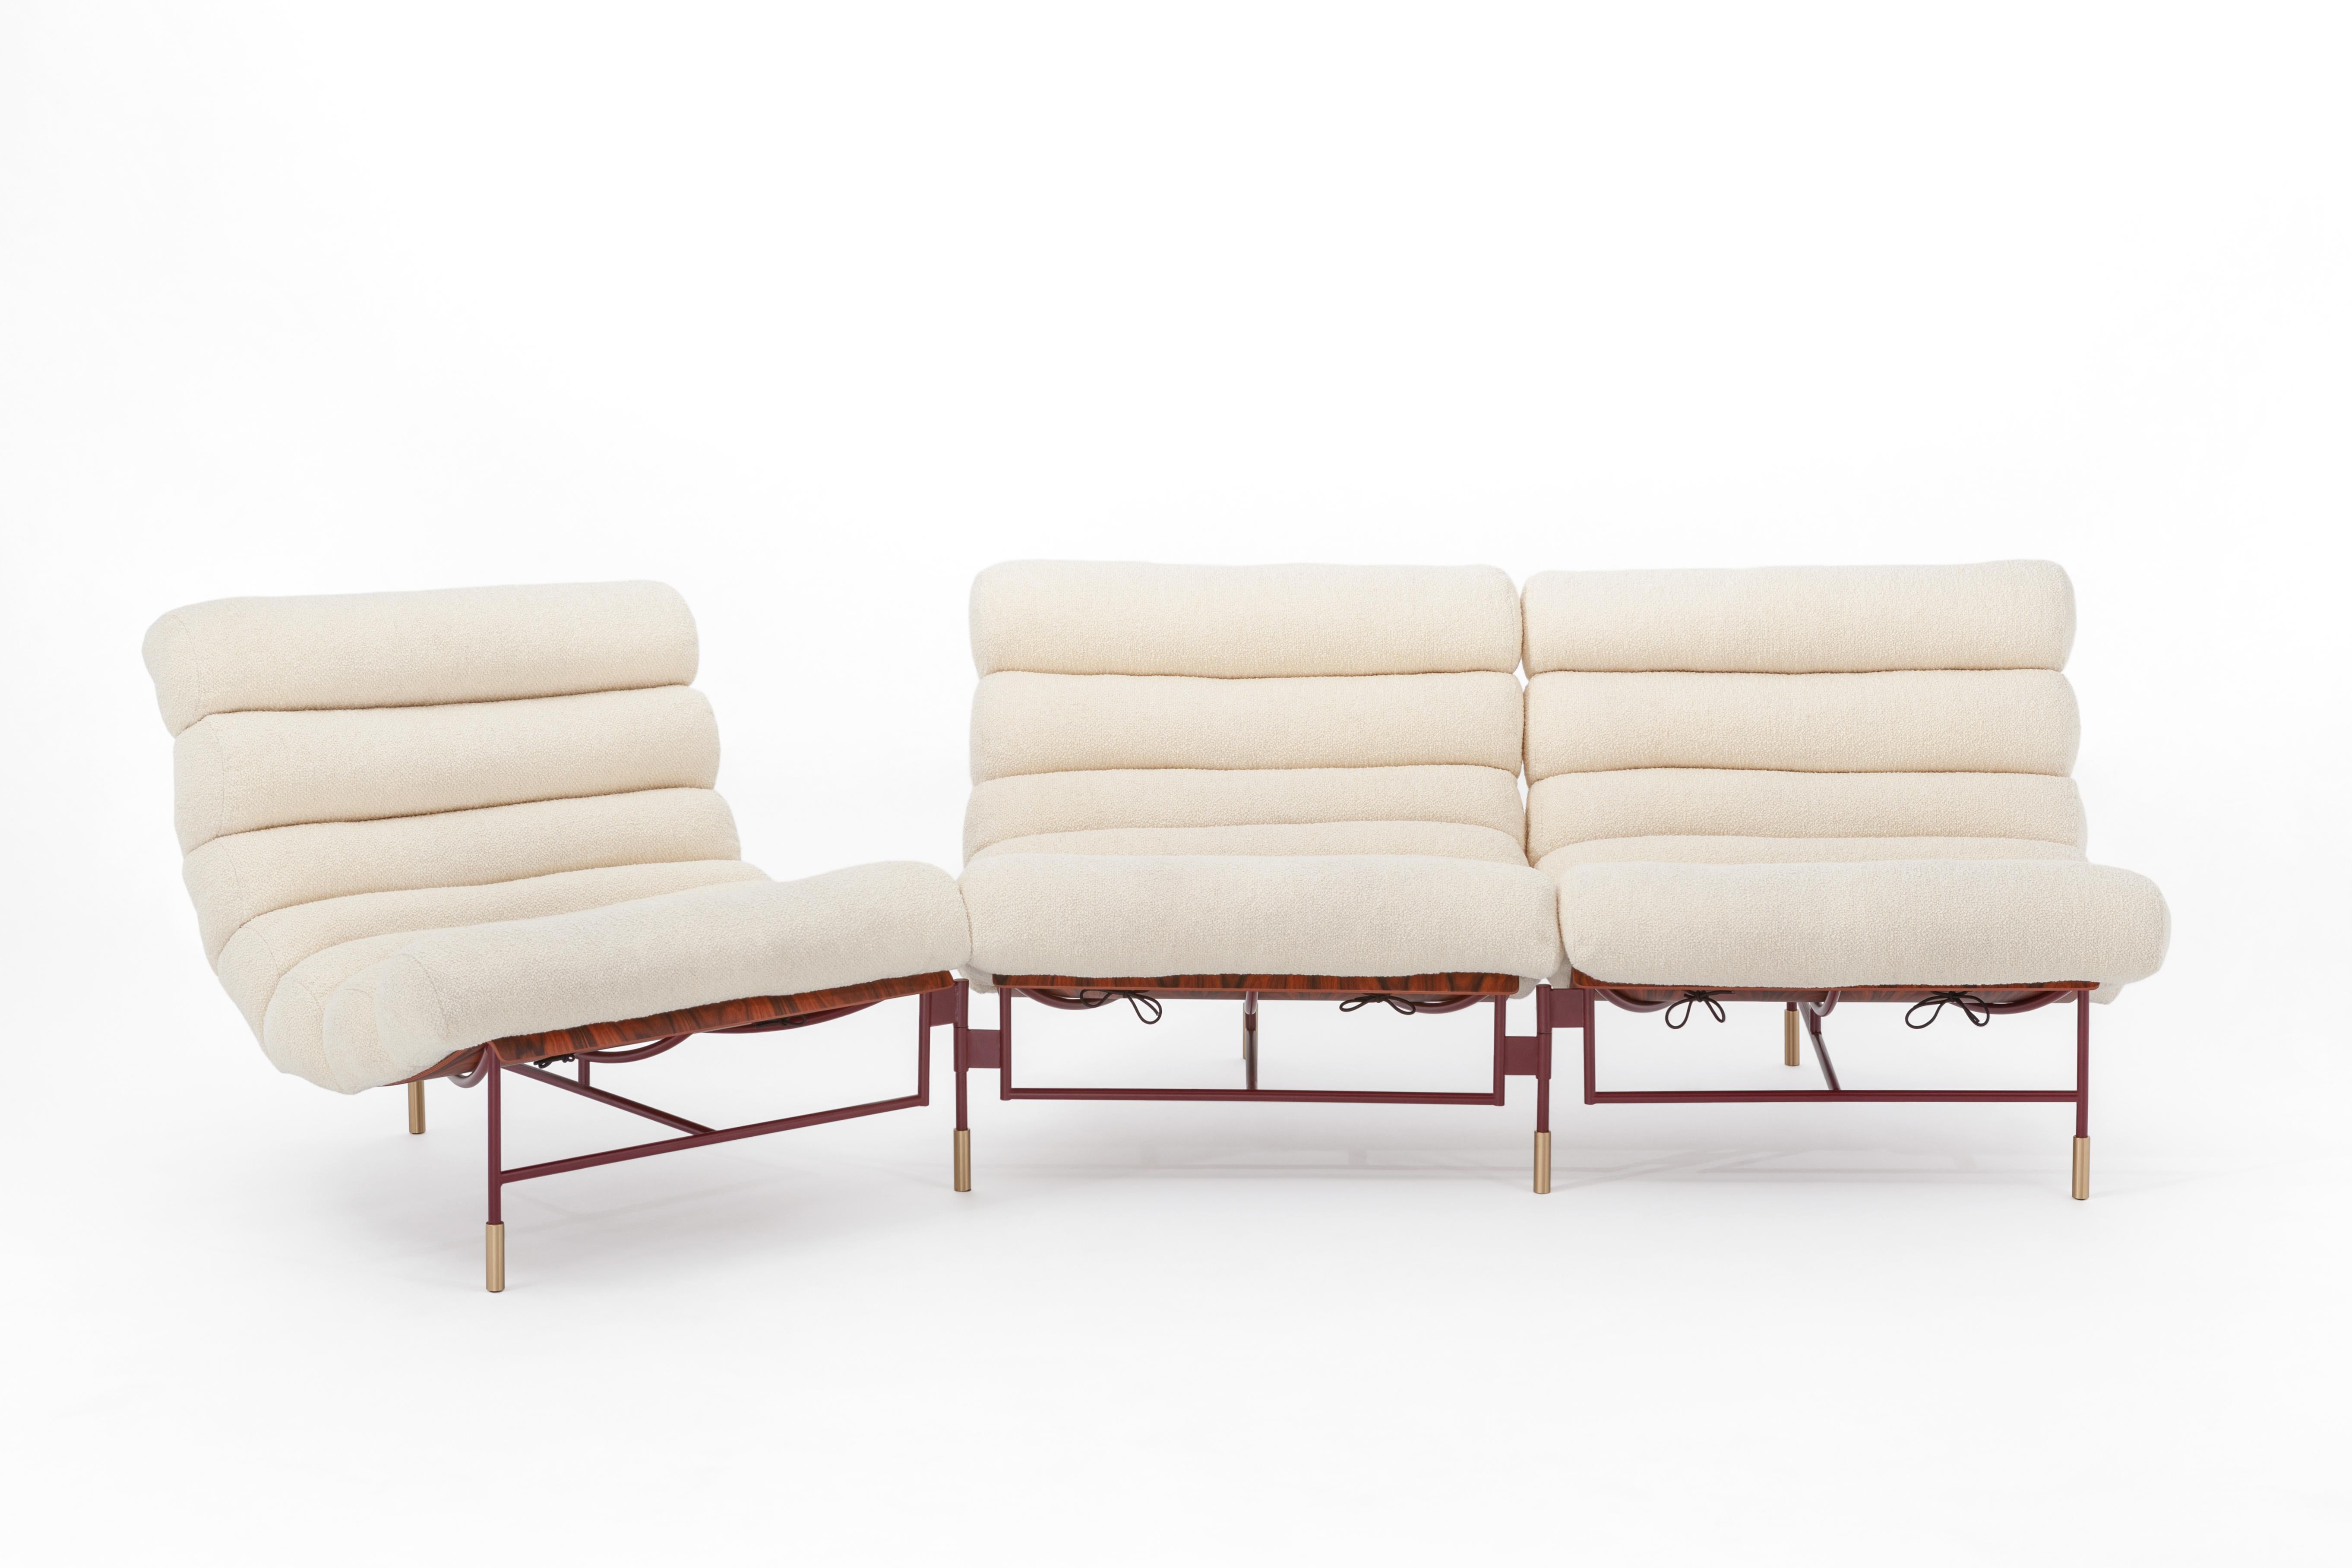 Par définition, cette variante du fauteuil 'Nuvola' est un canapé 3 places, mais elle est bien plus que cela. Comme le fauteuil, c'est une sculpture de fer, de bois et d'un large et doux padding qui donne le nom à cette pièce de design. Ce canapé